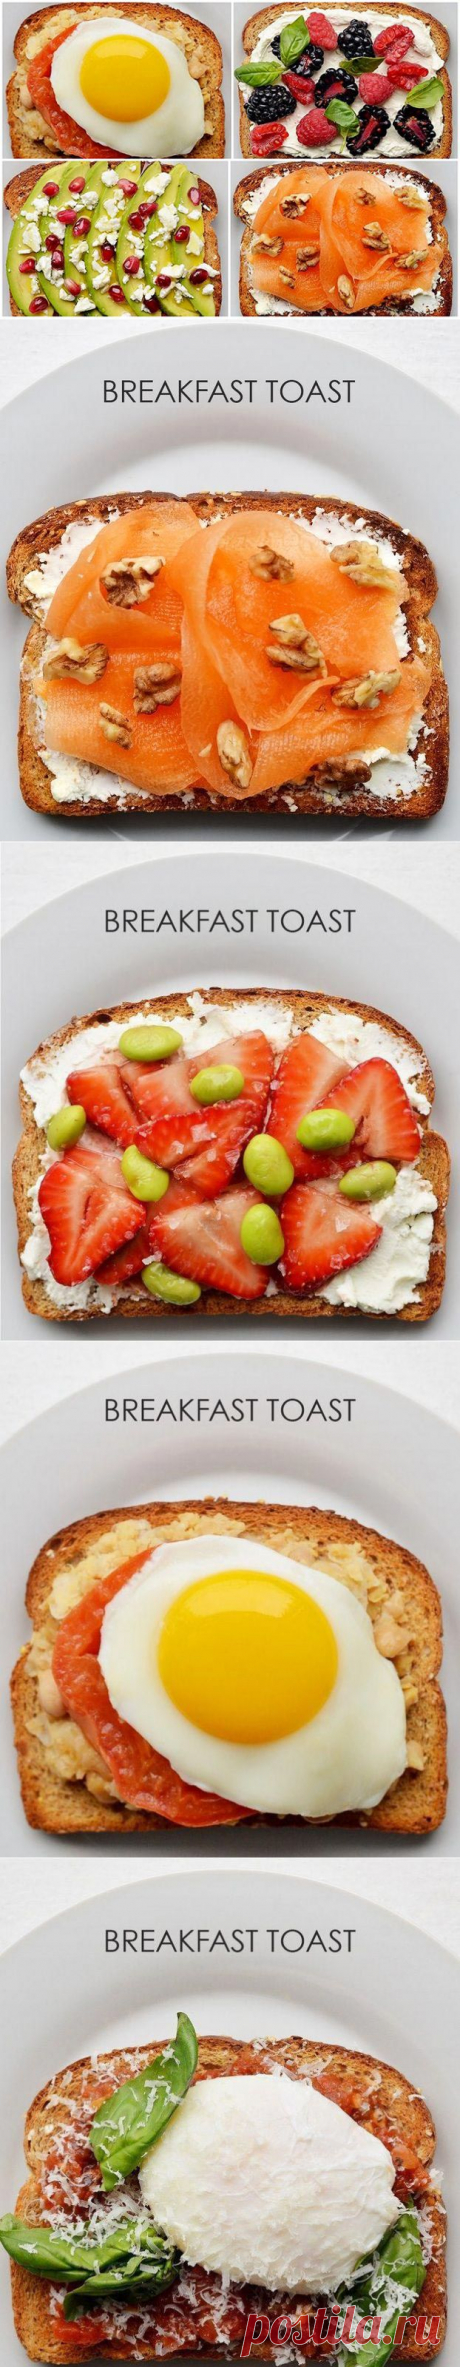 21 рецепт тоста к завтраку